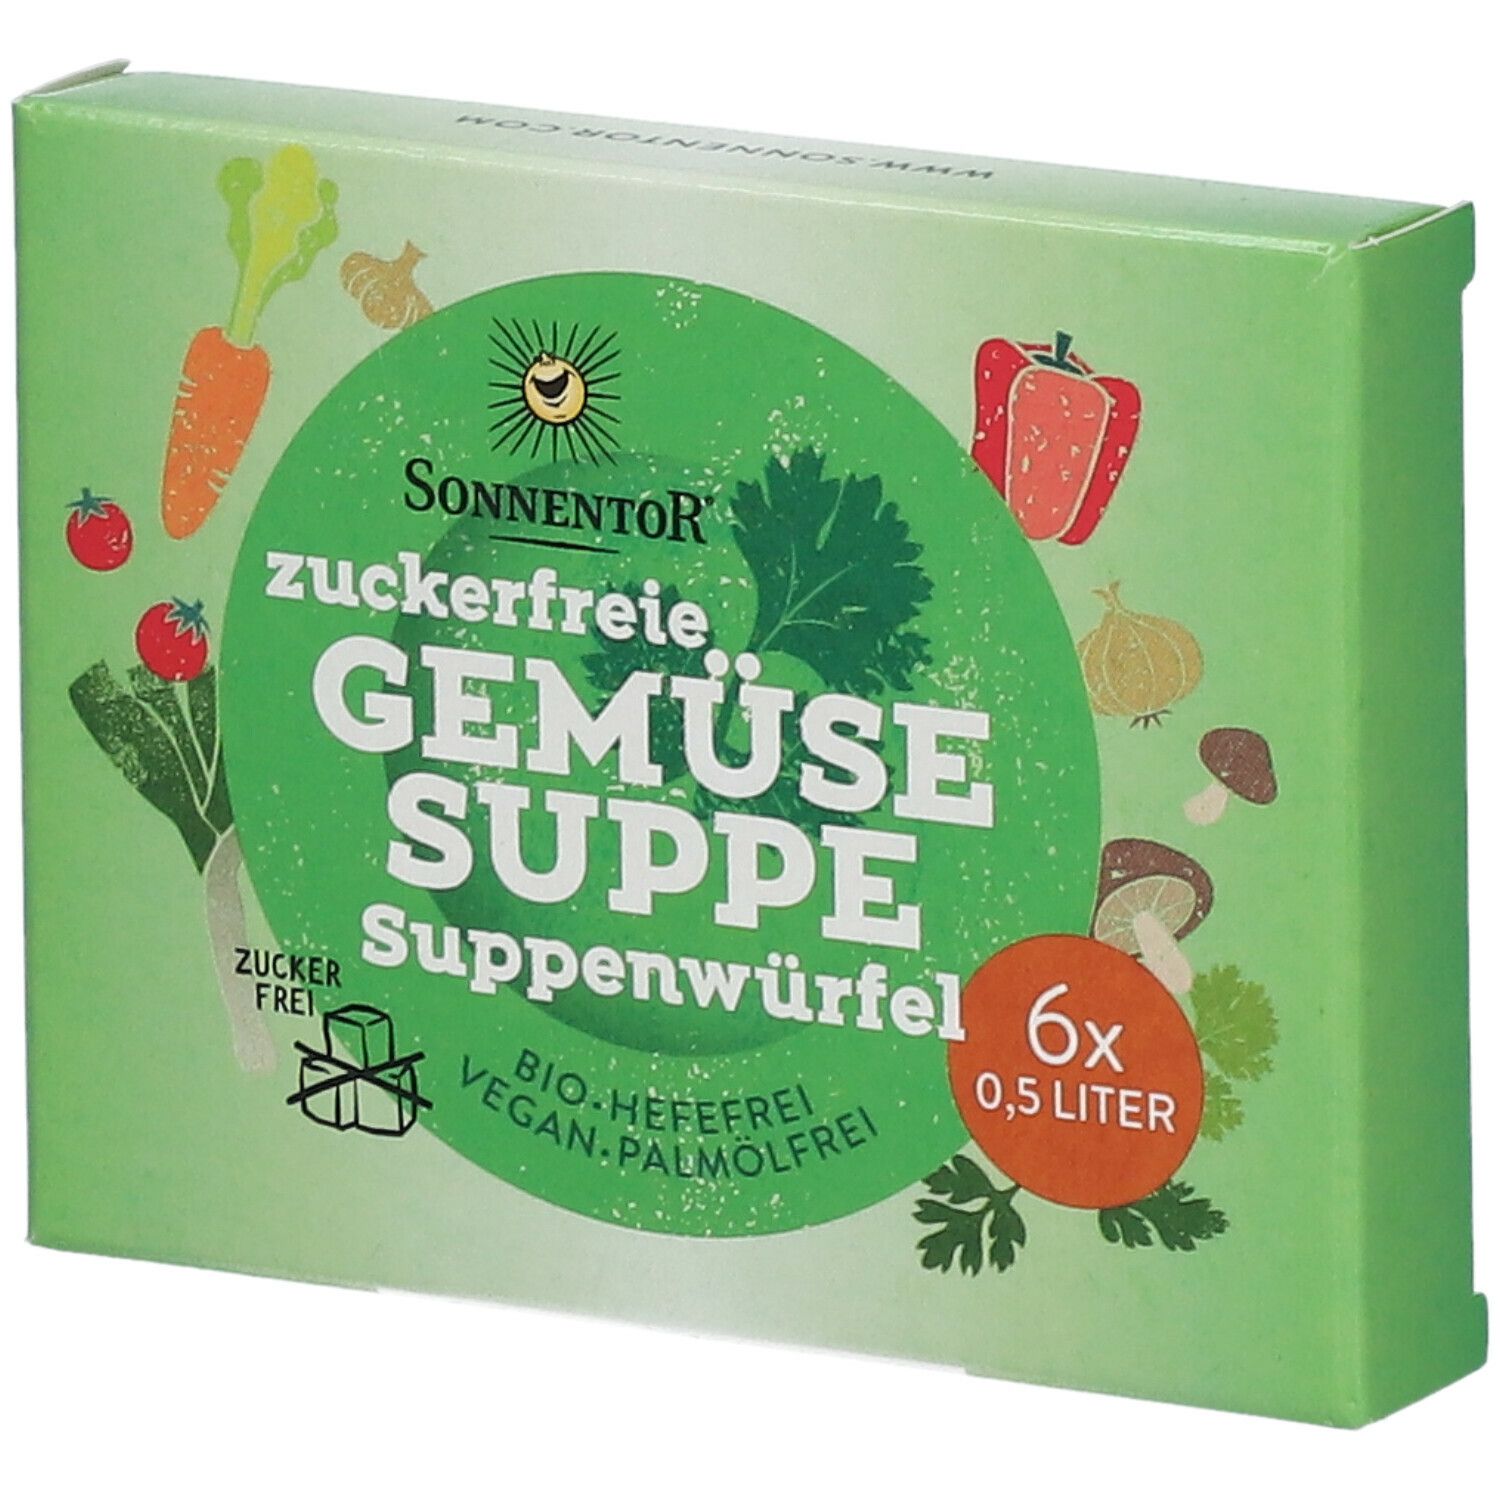 SonnentoR® Zuckerfreie Gemüsesuppe Suppenwürfel